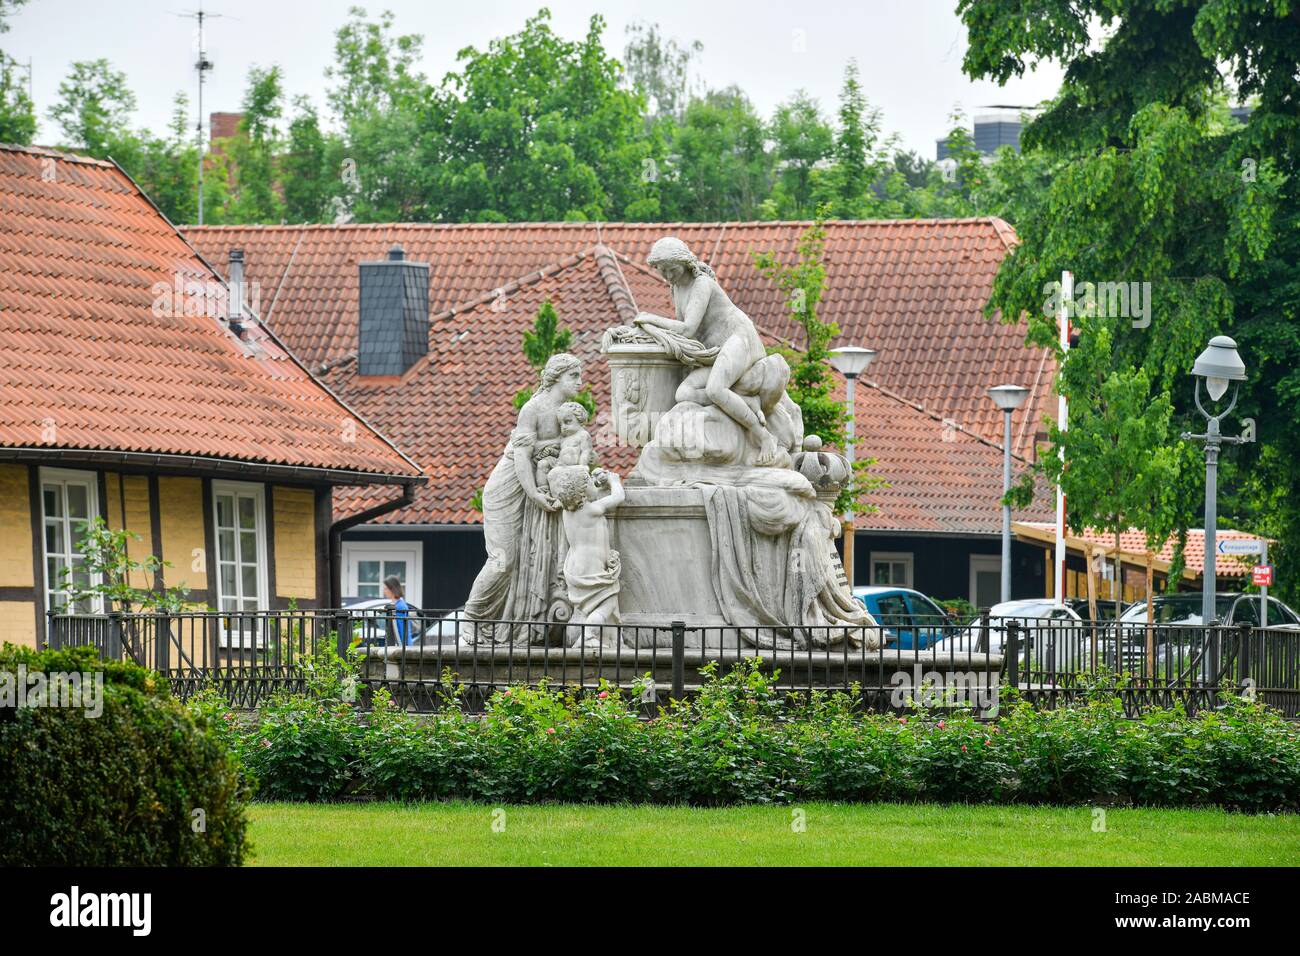 Caroline-Mathilde-Denkmal am Osteingang, Französischer Garten, Celle, Niedersachsen, Deutschland Stock Photo